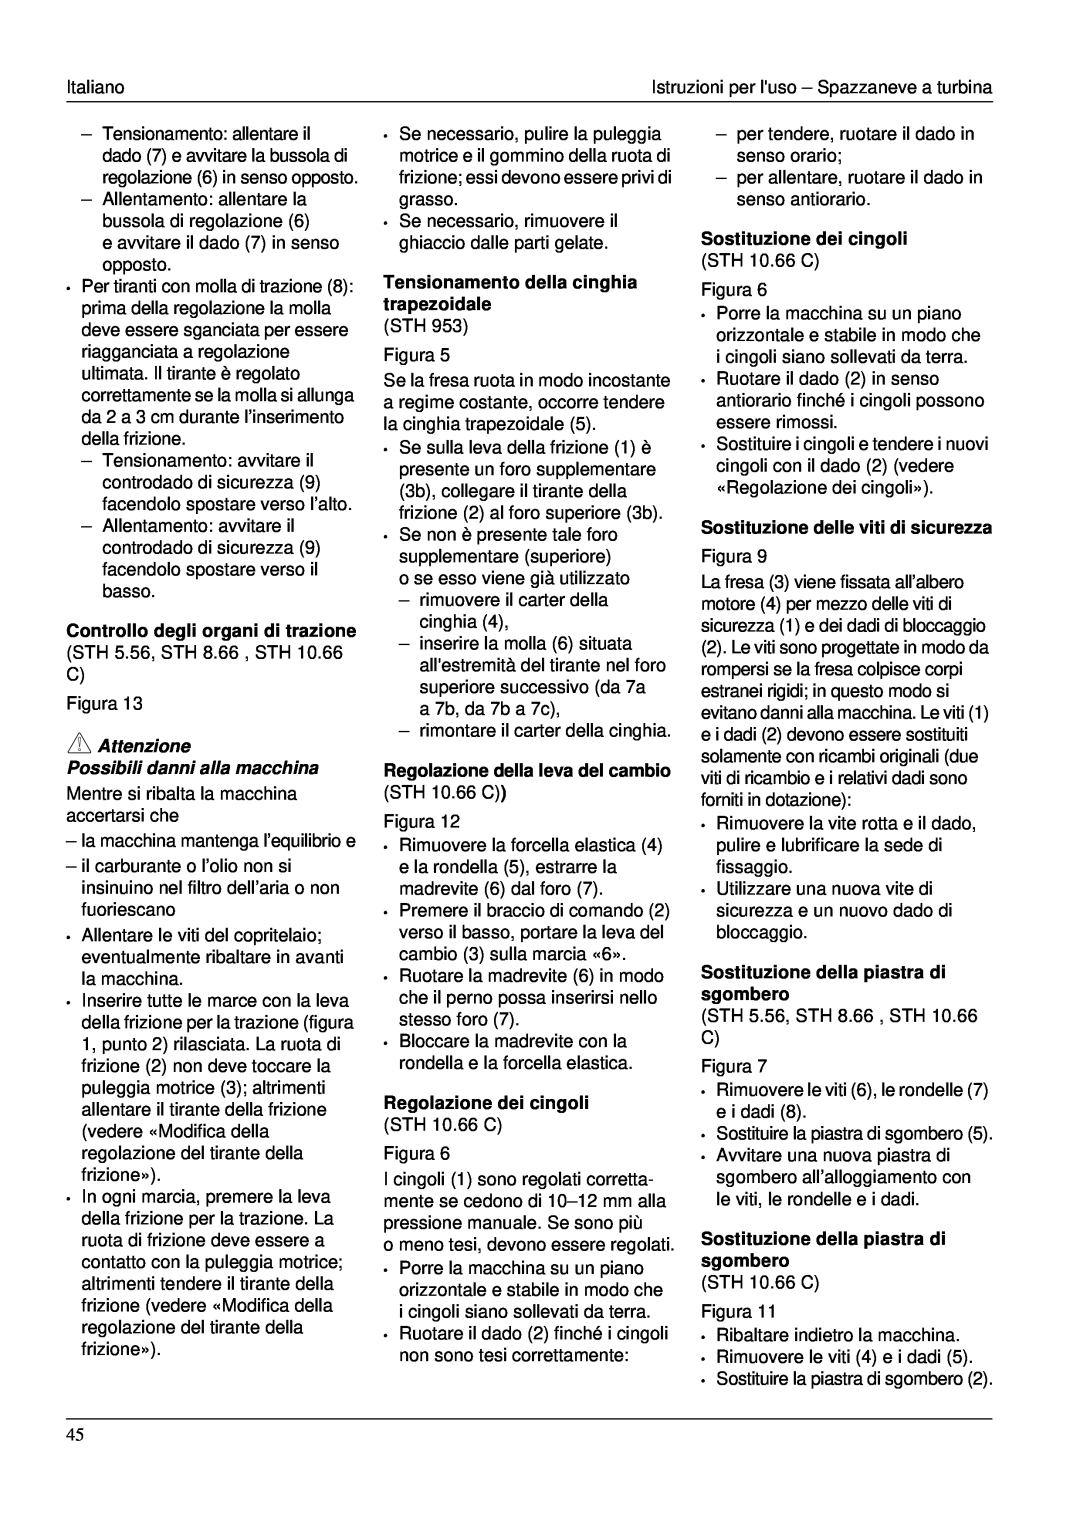 Karcher STH 953 Controllo degli organi di trazione STH 5.56, STH 8.66 , STH 10.66 C, Regolazione dei cingoli STH 10.66 C 